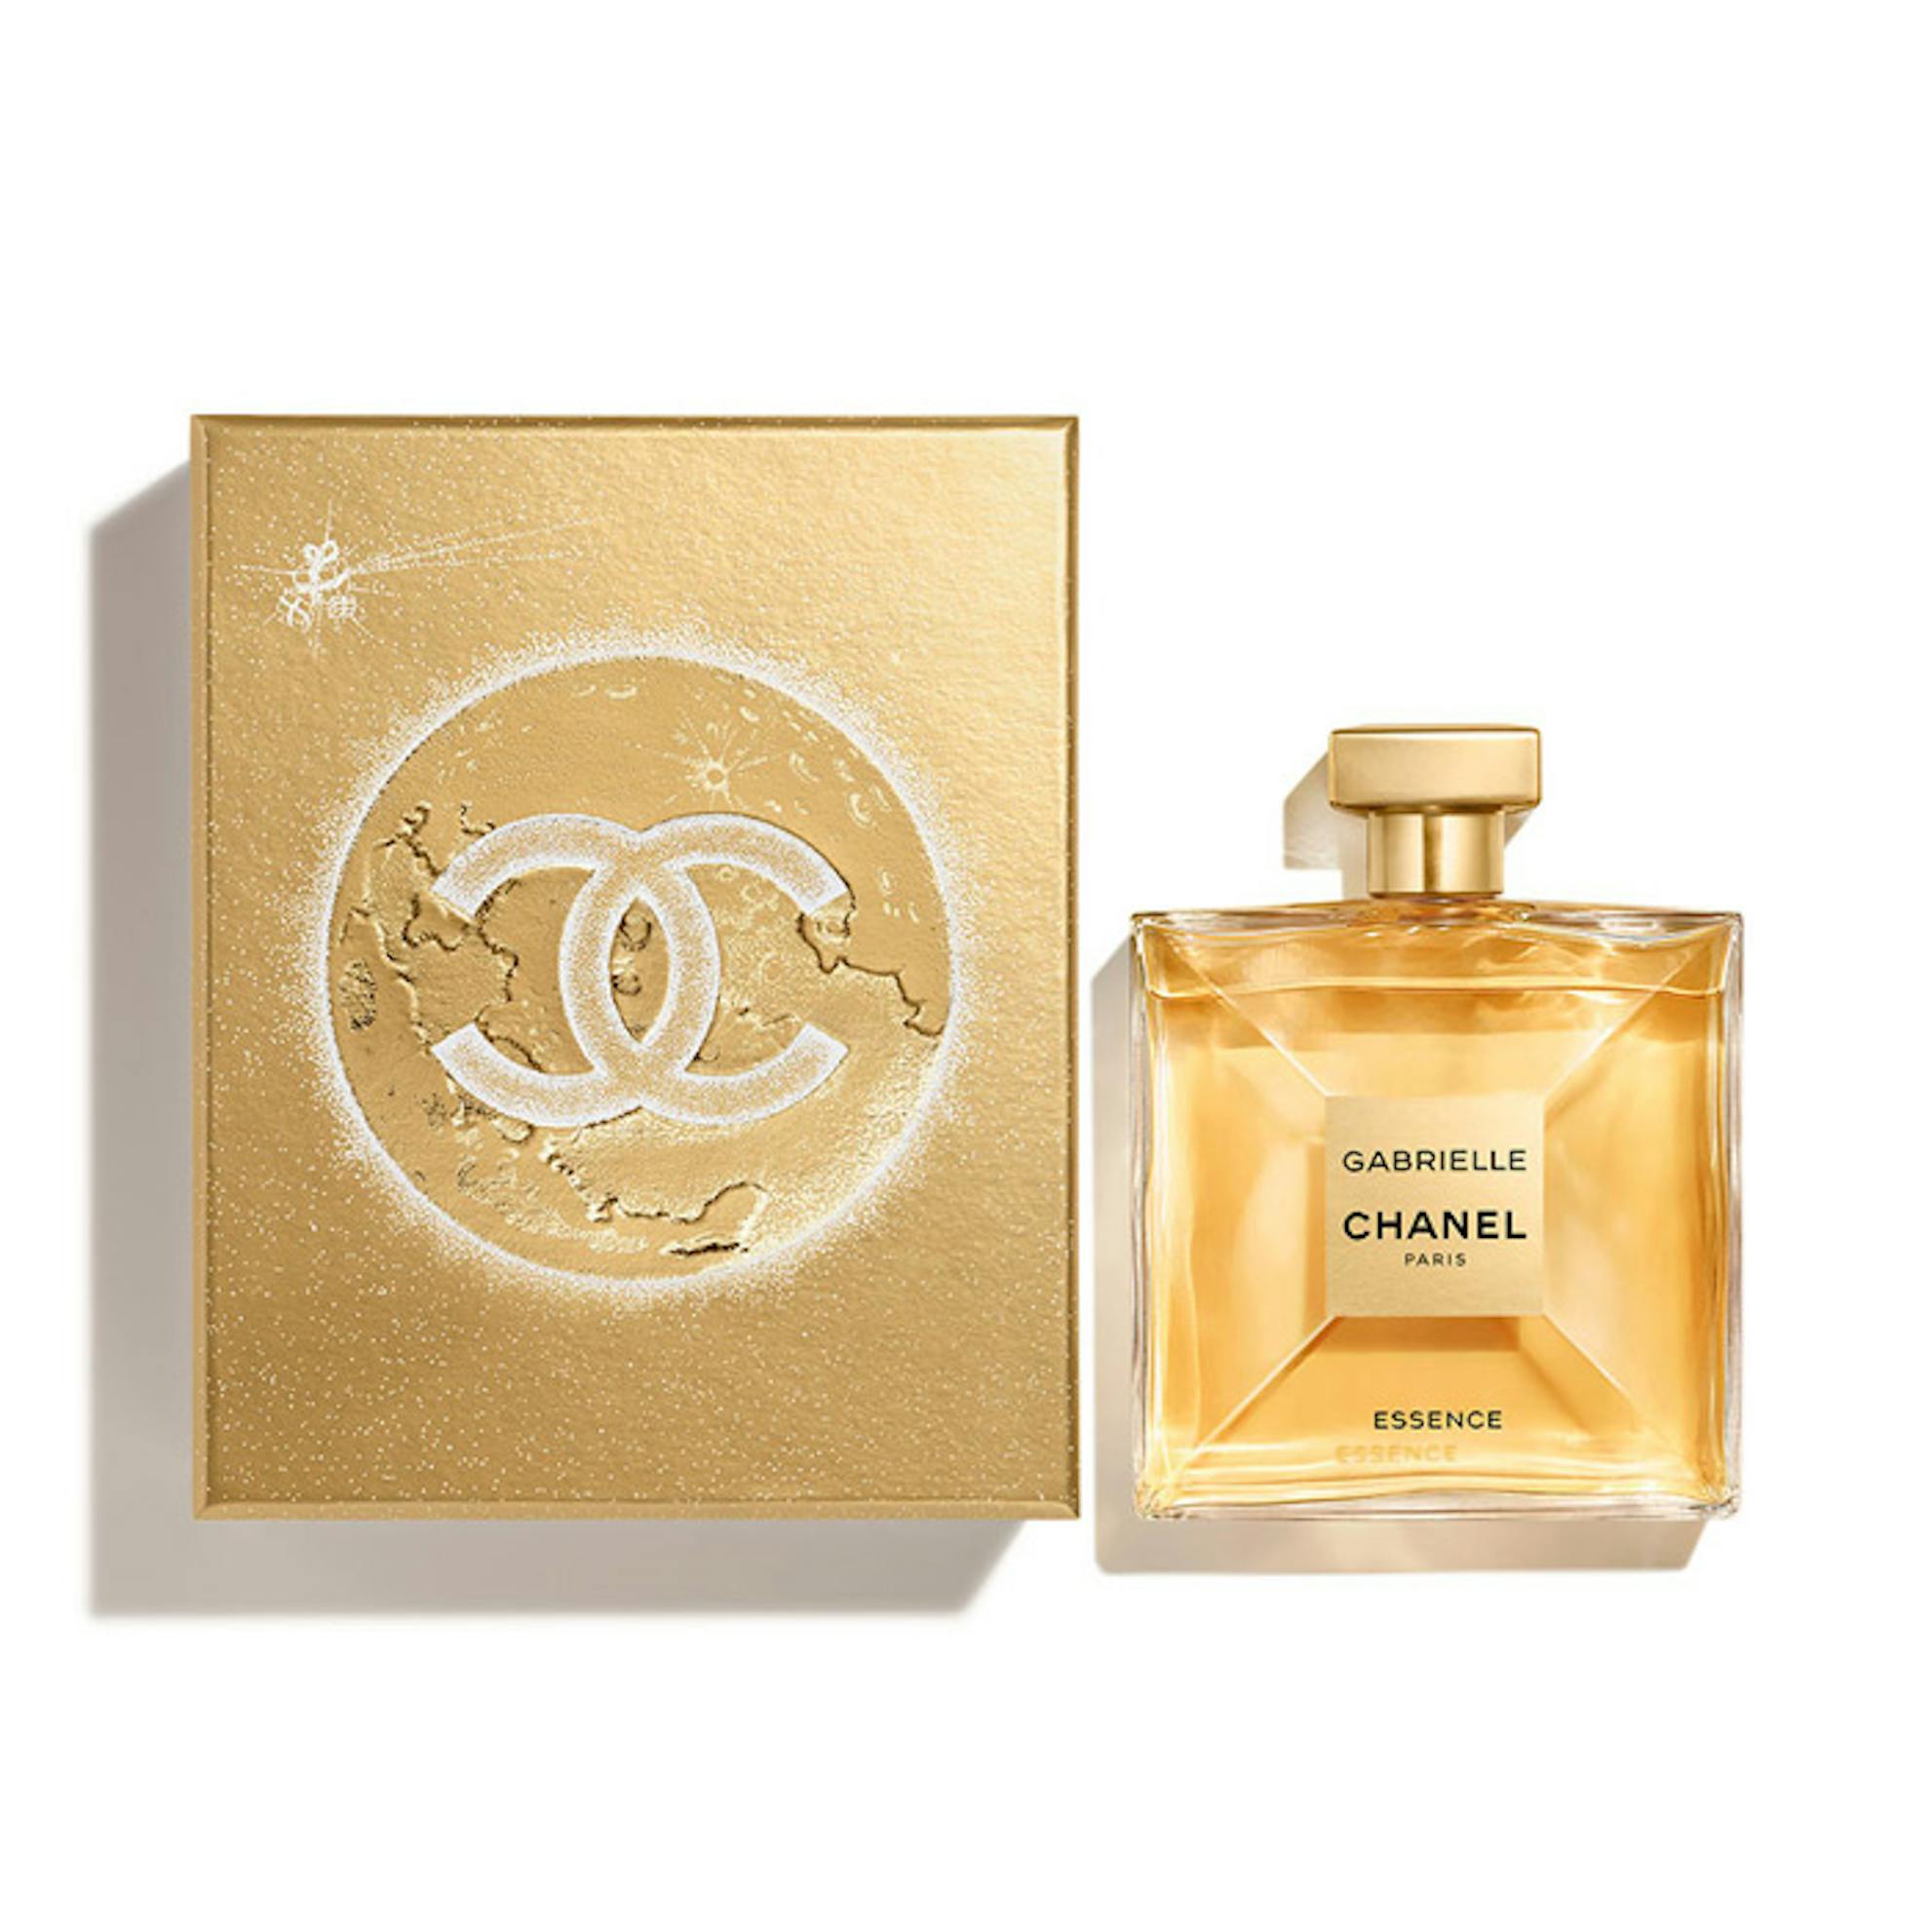 Chanel Gabrielle Essence Eau de Parfum 150ml